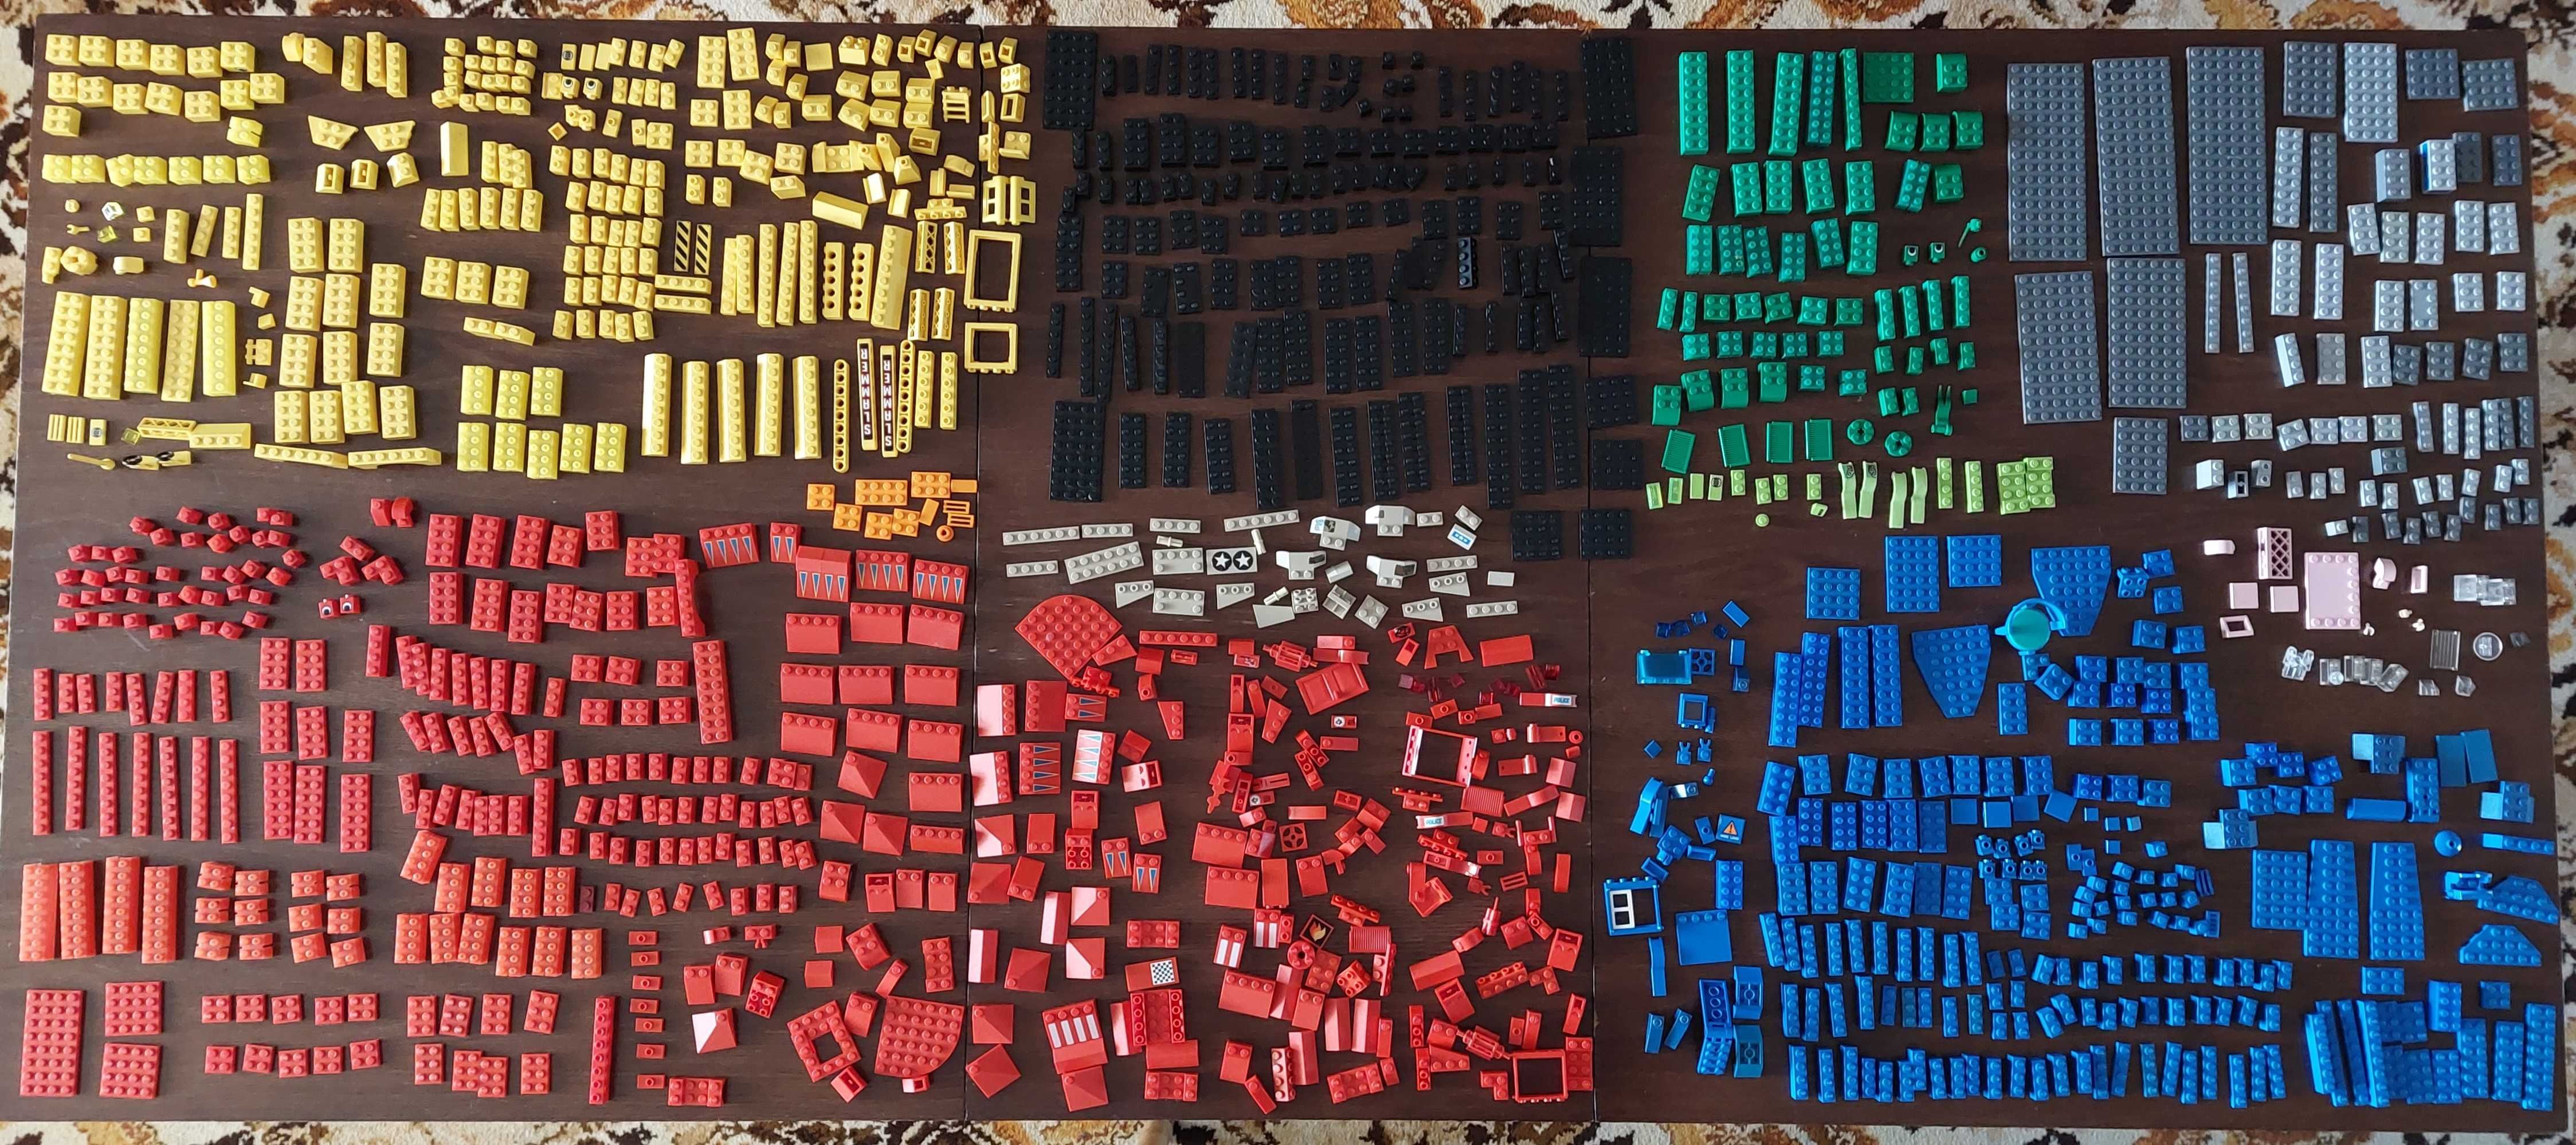 LEGO Mega zestaw 2100 szt. klocków lego, różne kształty i kolory